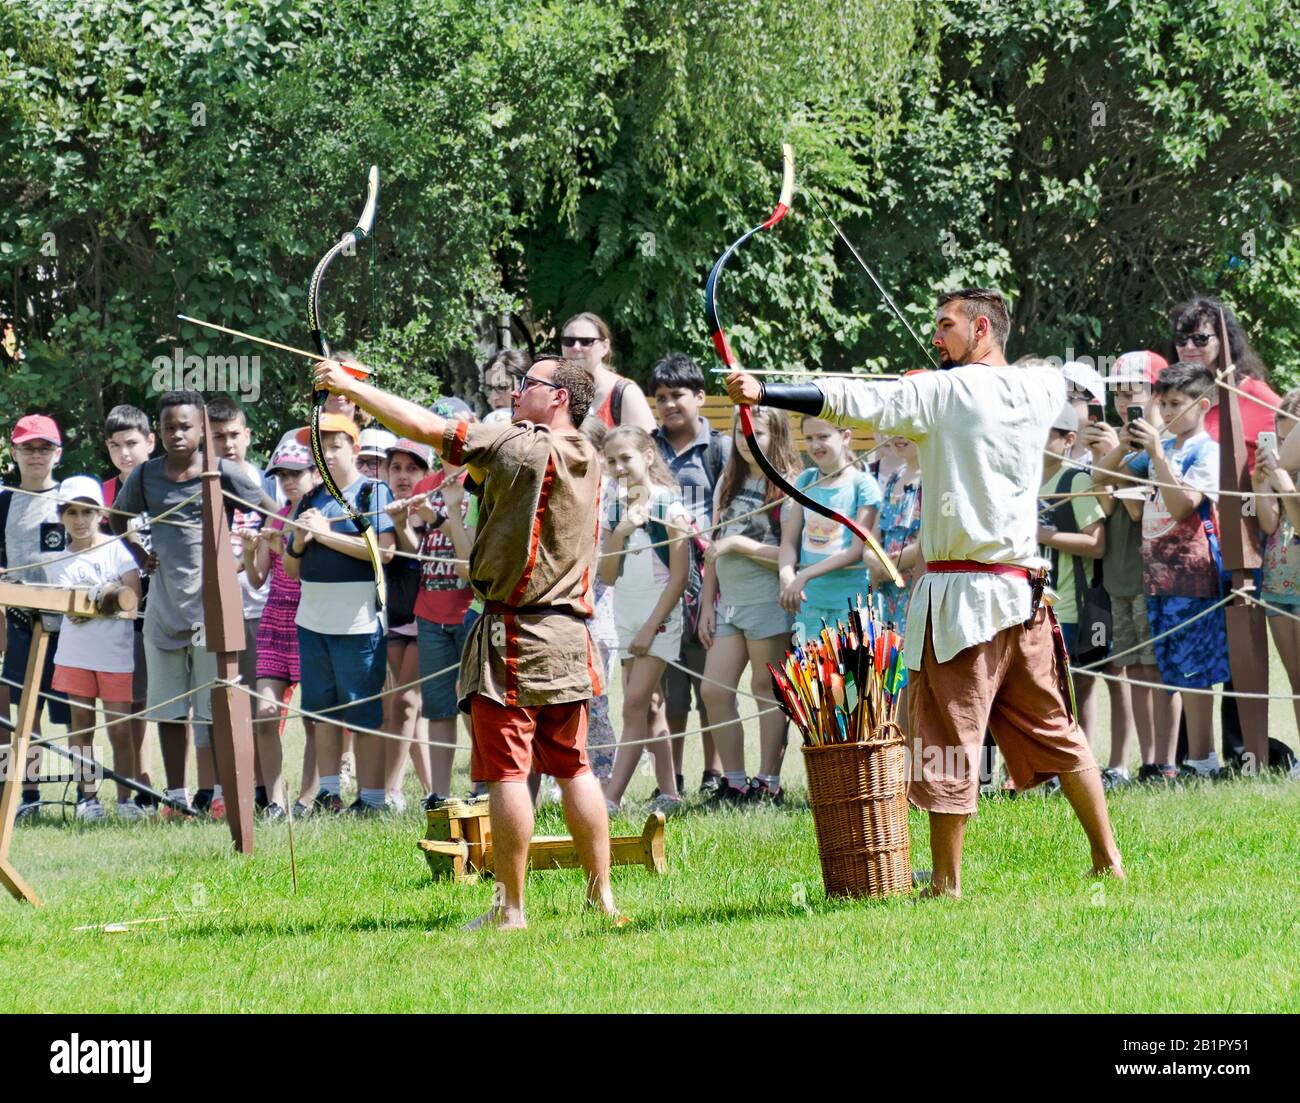 Des réacteurs qui se sont fait la démonstration des archers romains lors du festival romain de Carnuntum, Autriche Banque D'Images